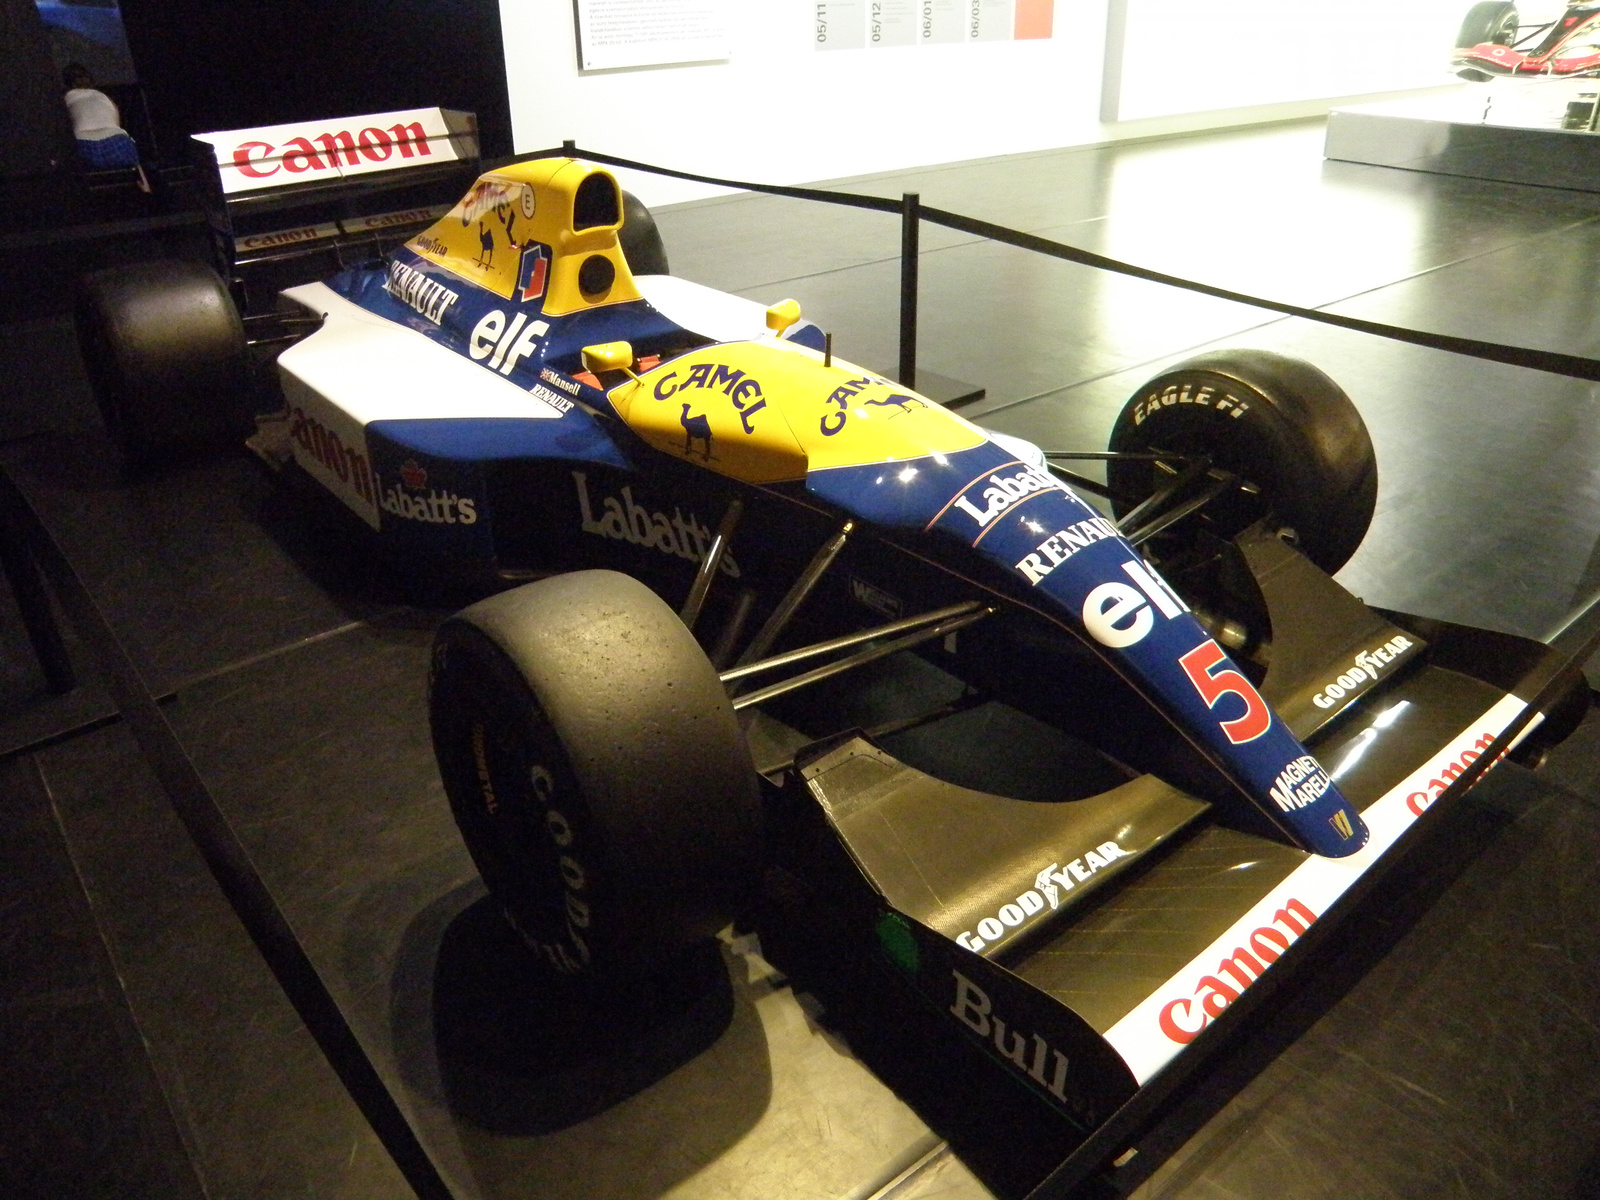 Williams FW14B 1992